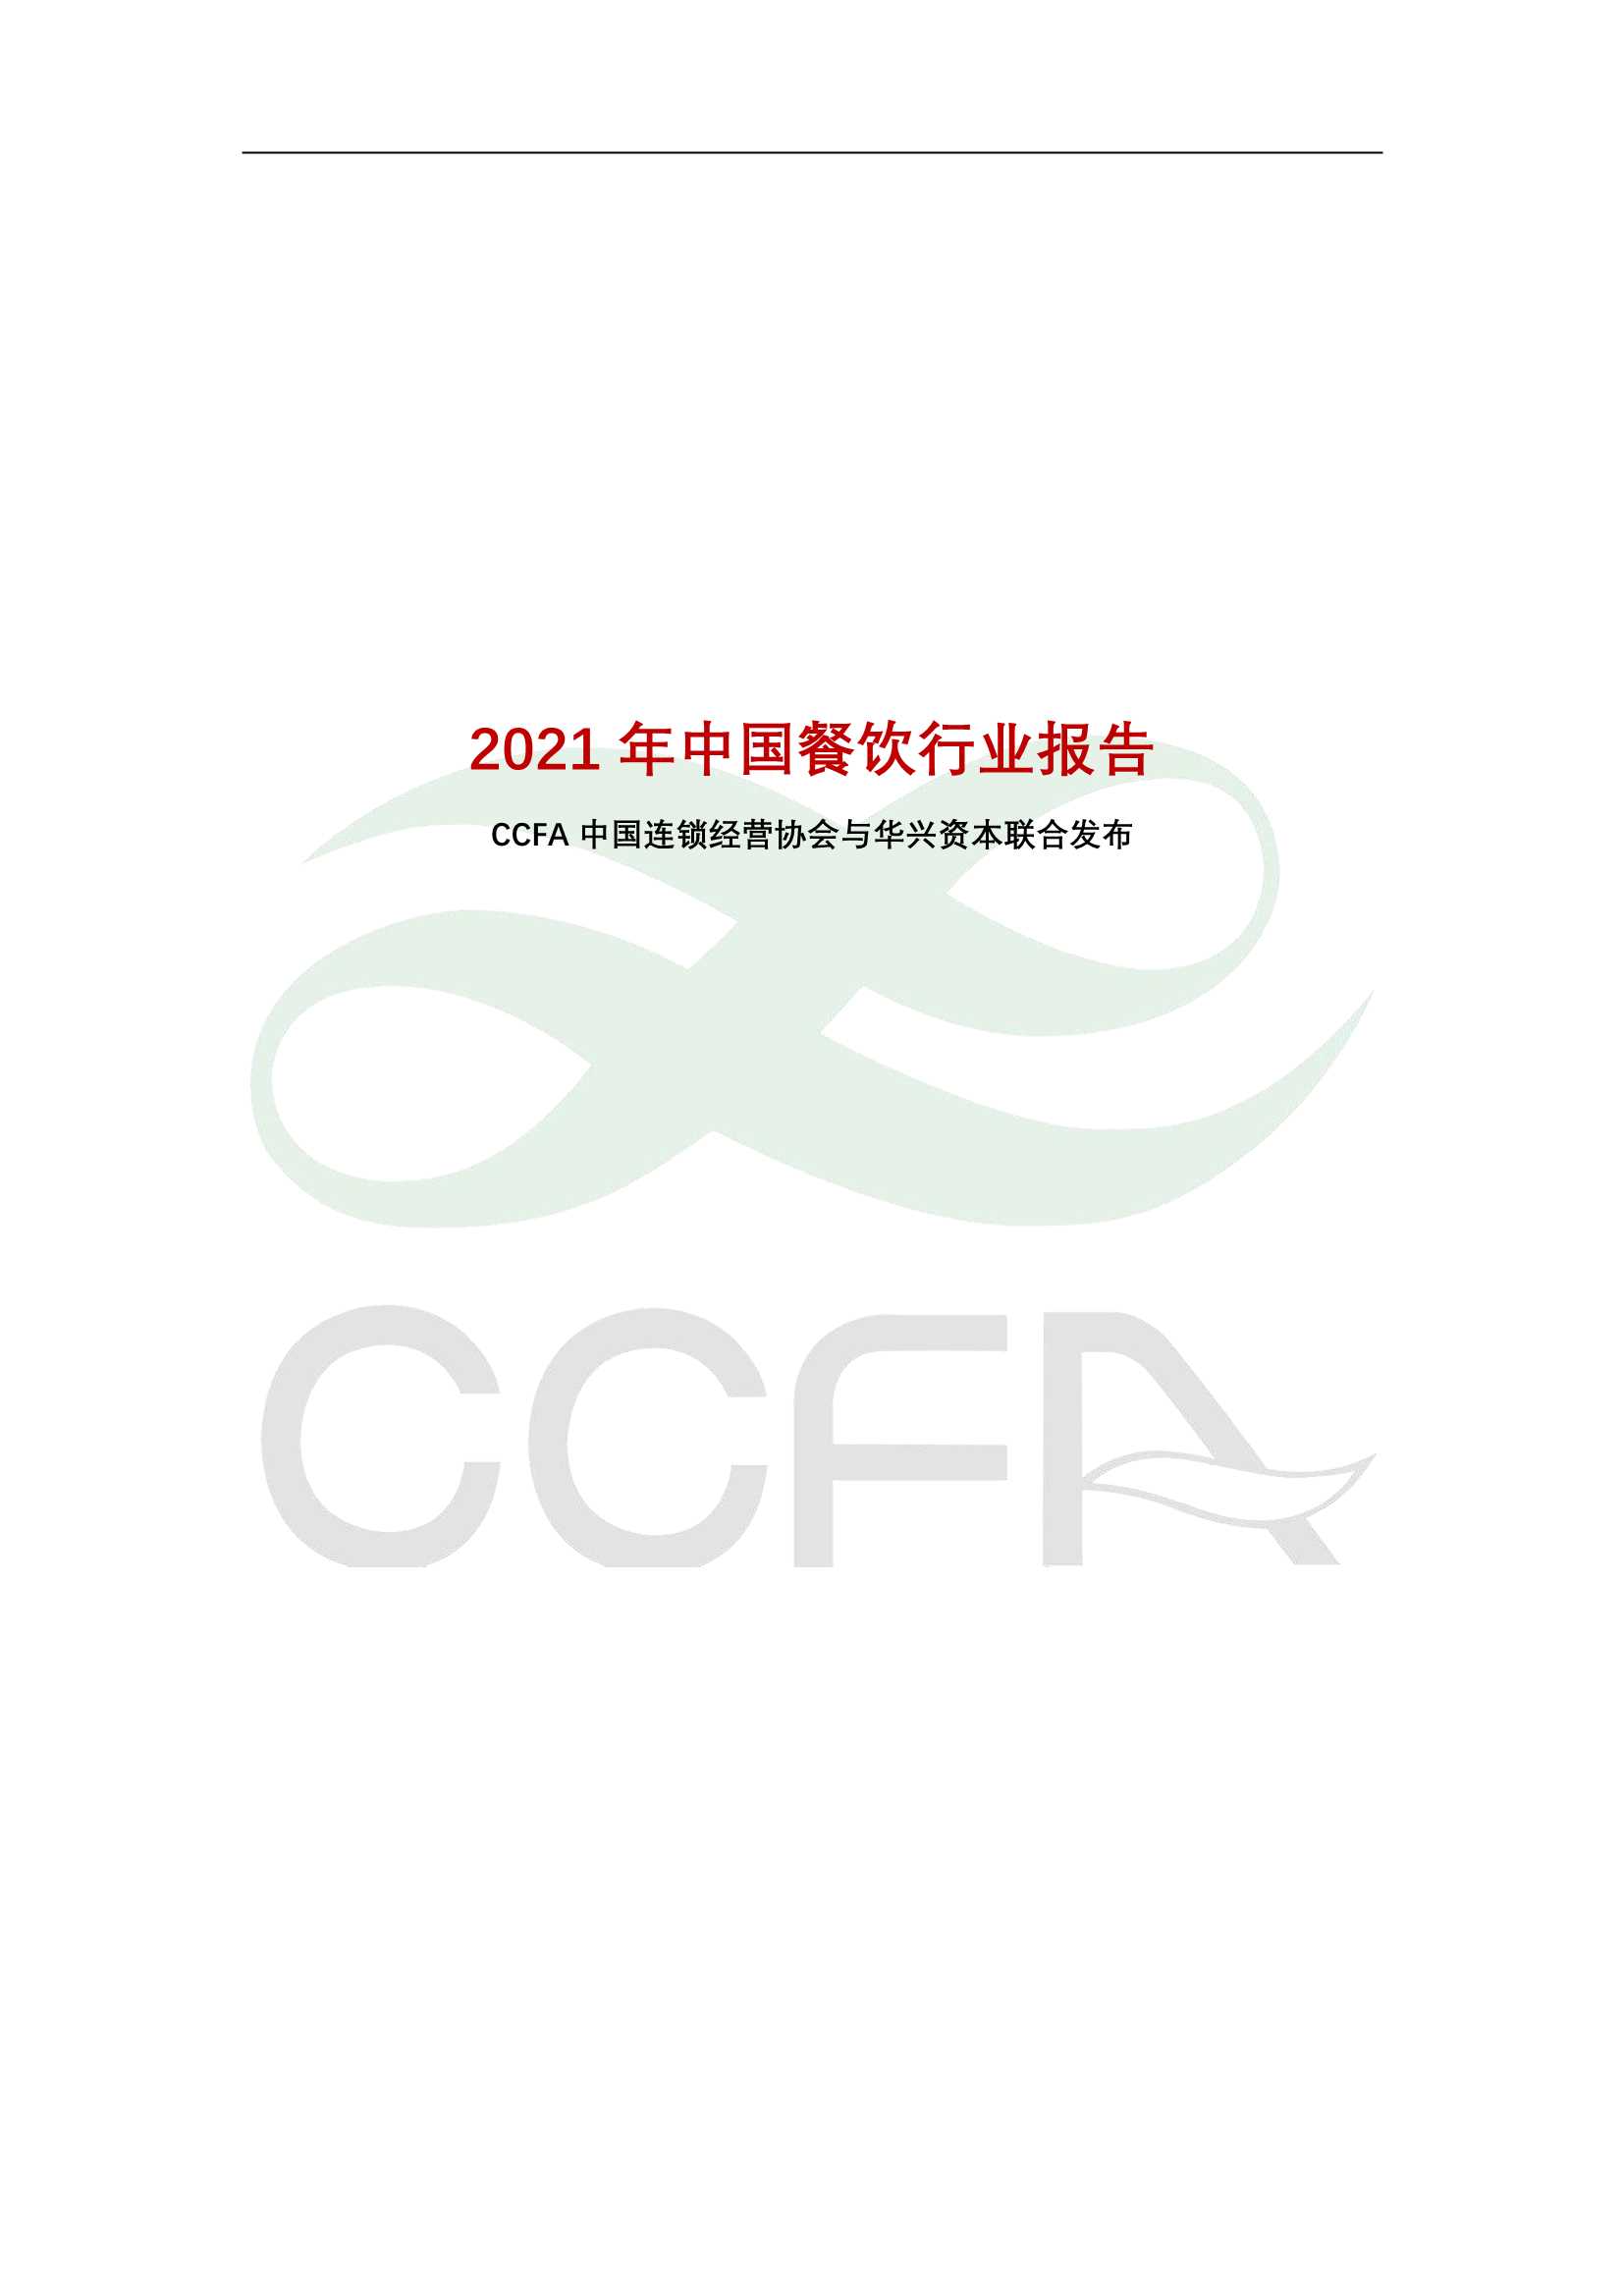 中国连锁经营协会-2021年中国连锁餐饮行业报告-2022.04-60页